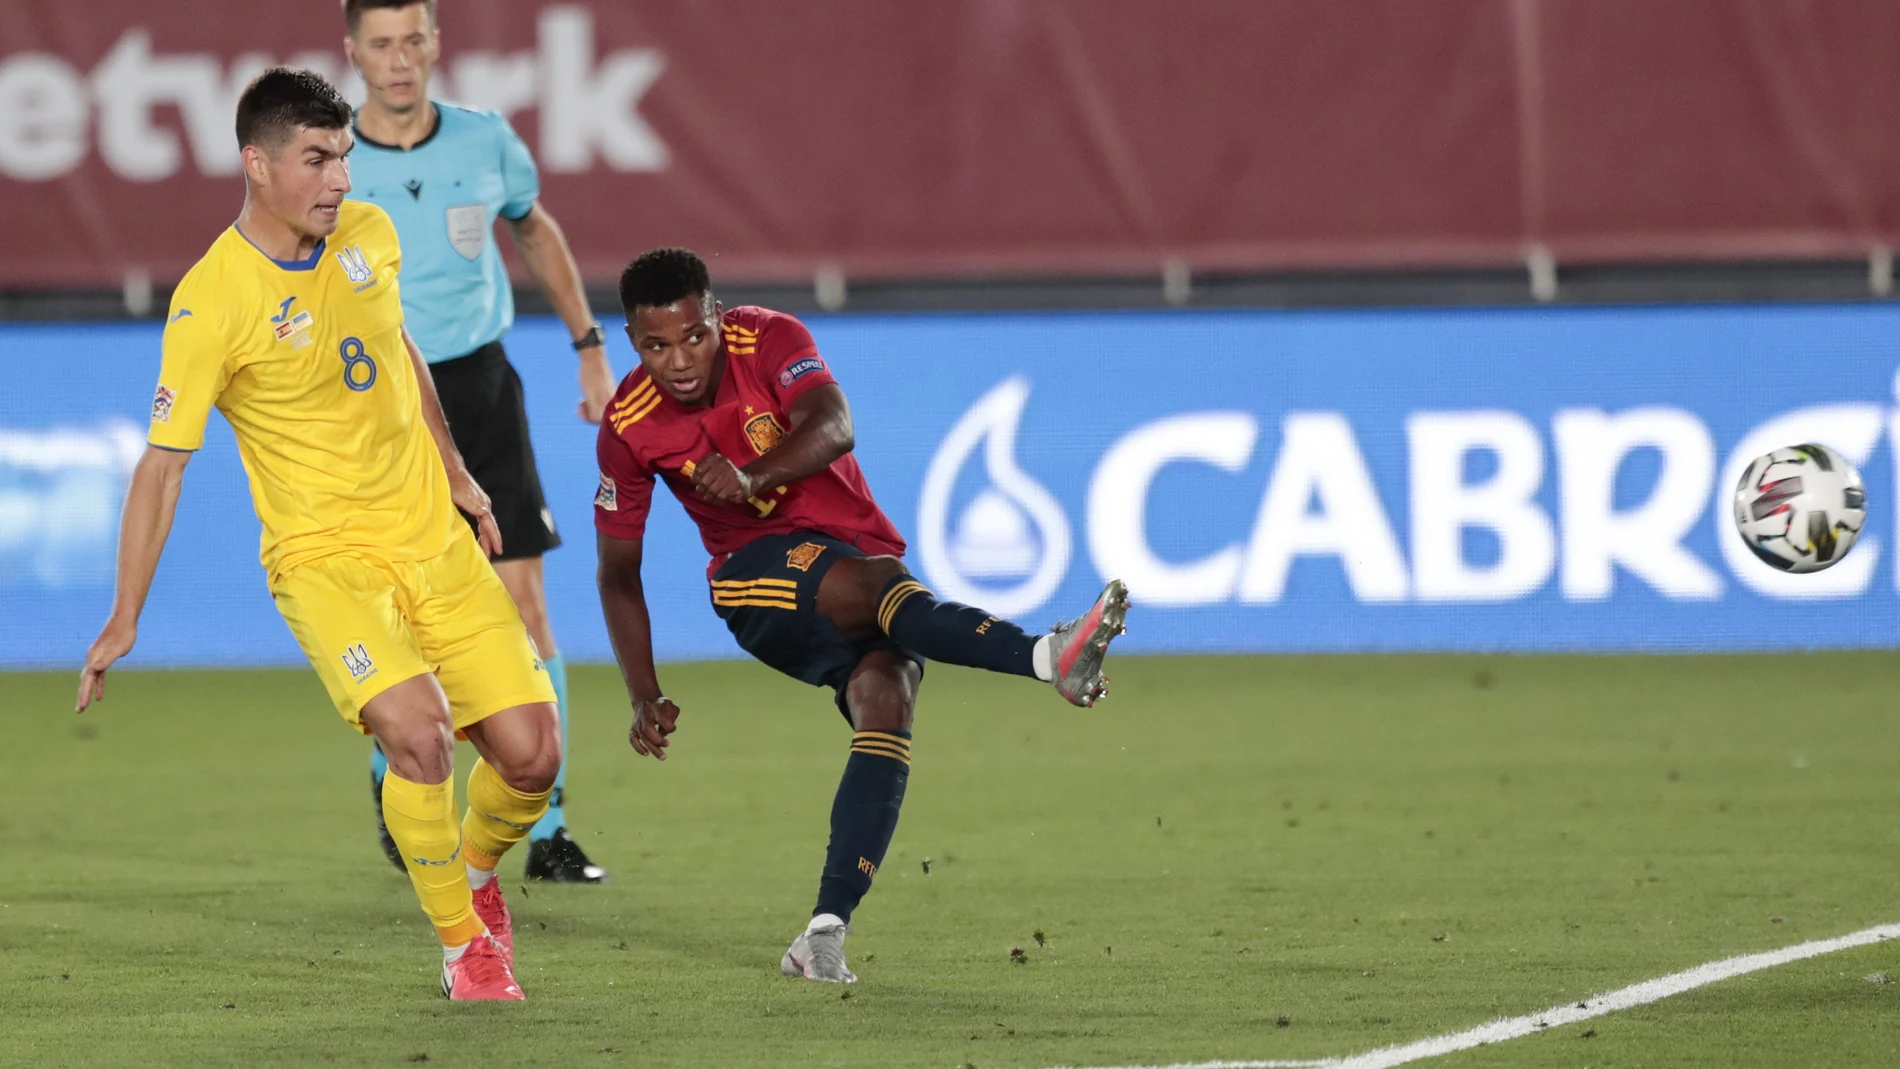 Ansu Fati, en el momento del disparo para marcar su primer gol con España